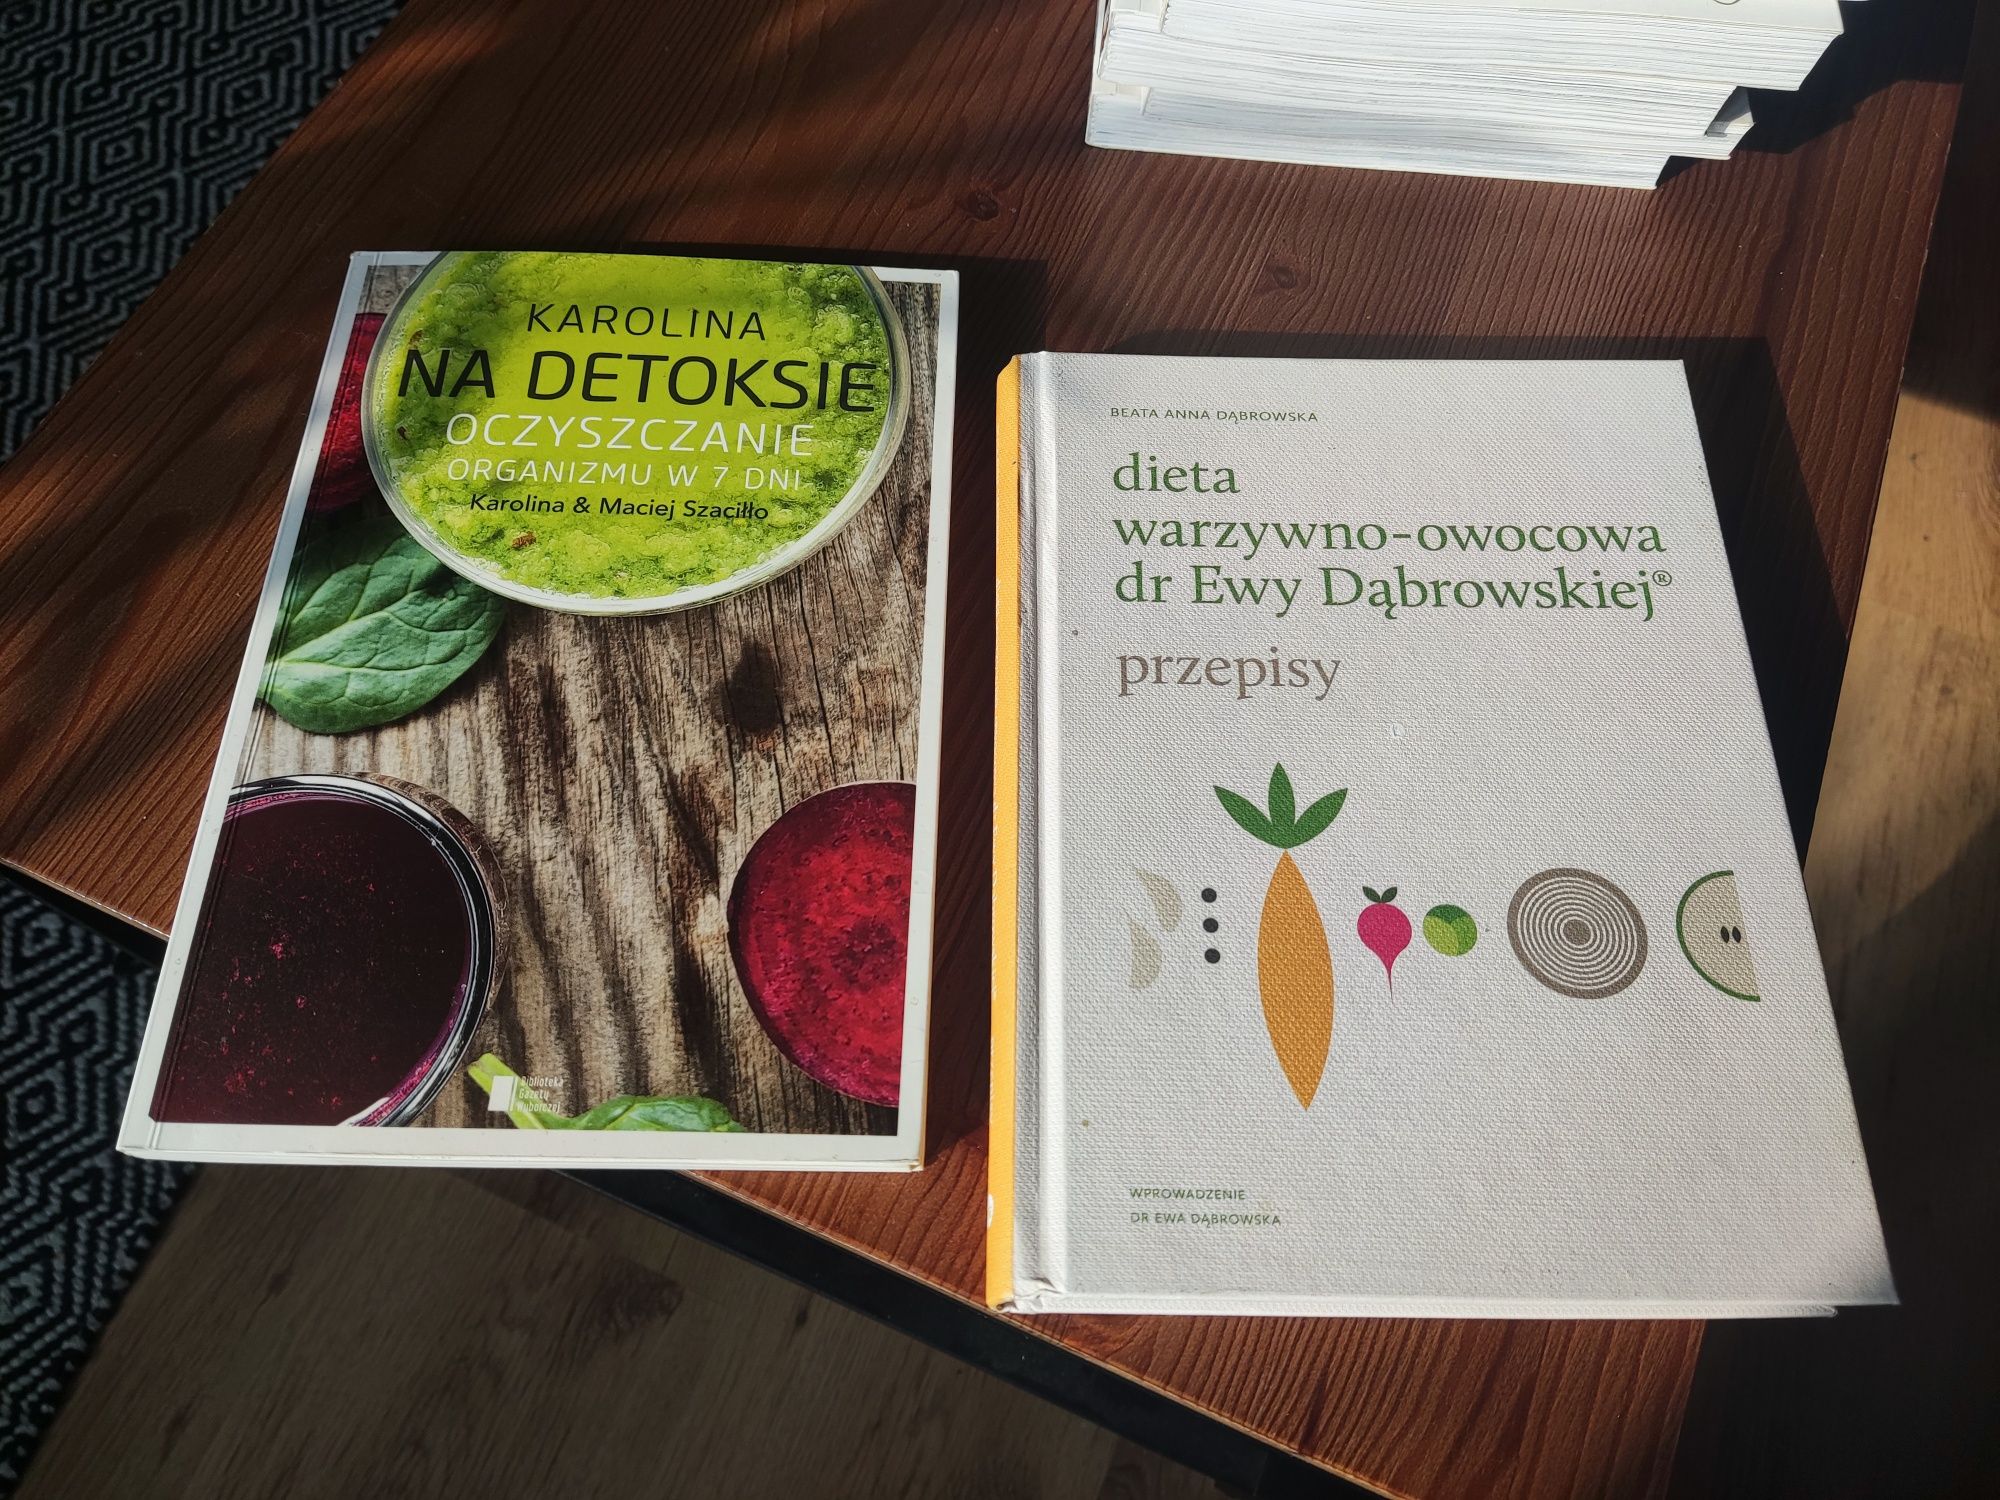 Dieta warzywno-owocowa dr Ewy Dąbrowskiej + gratis Karolina na detoksi